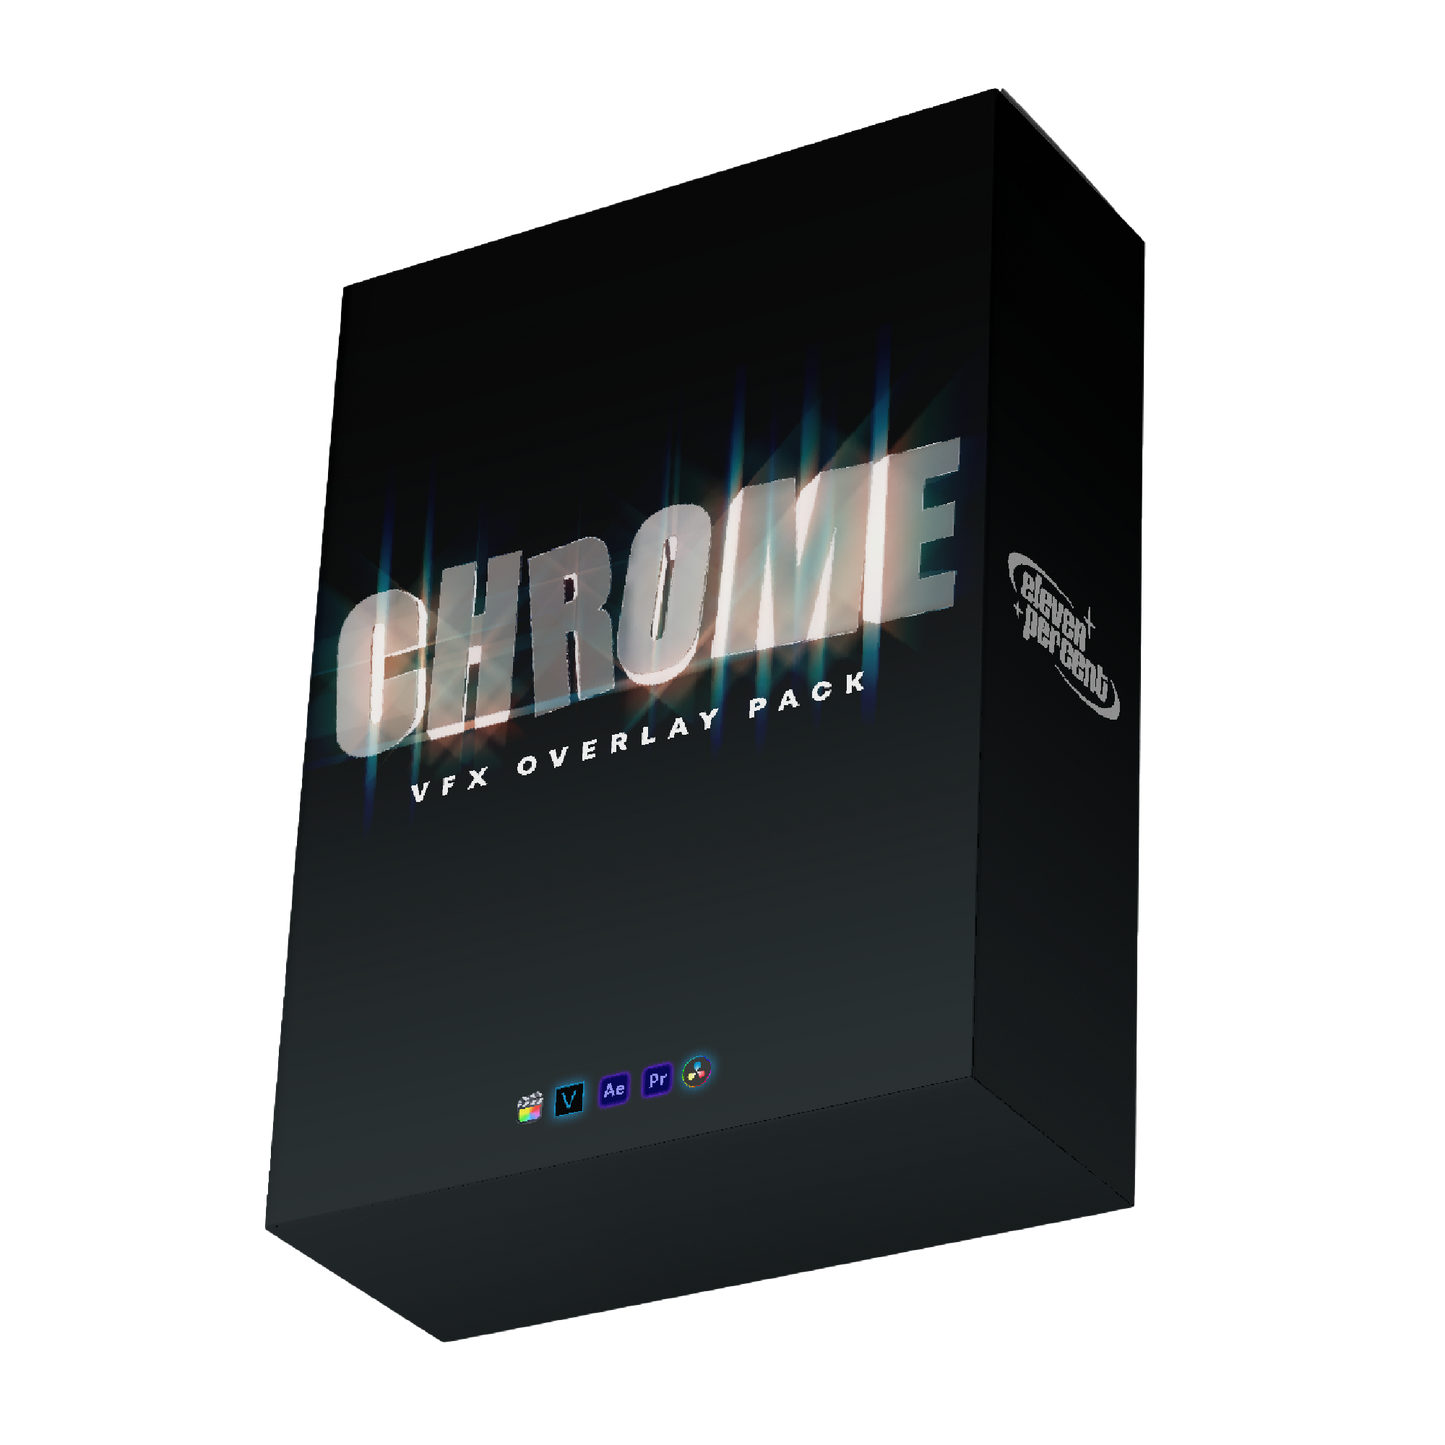 3D Chrome Overlay Pack